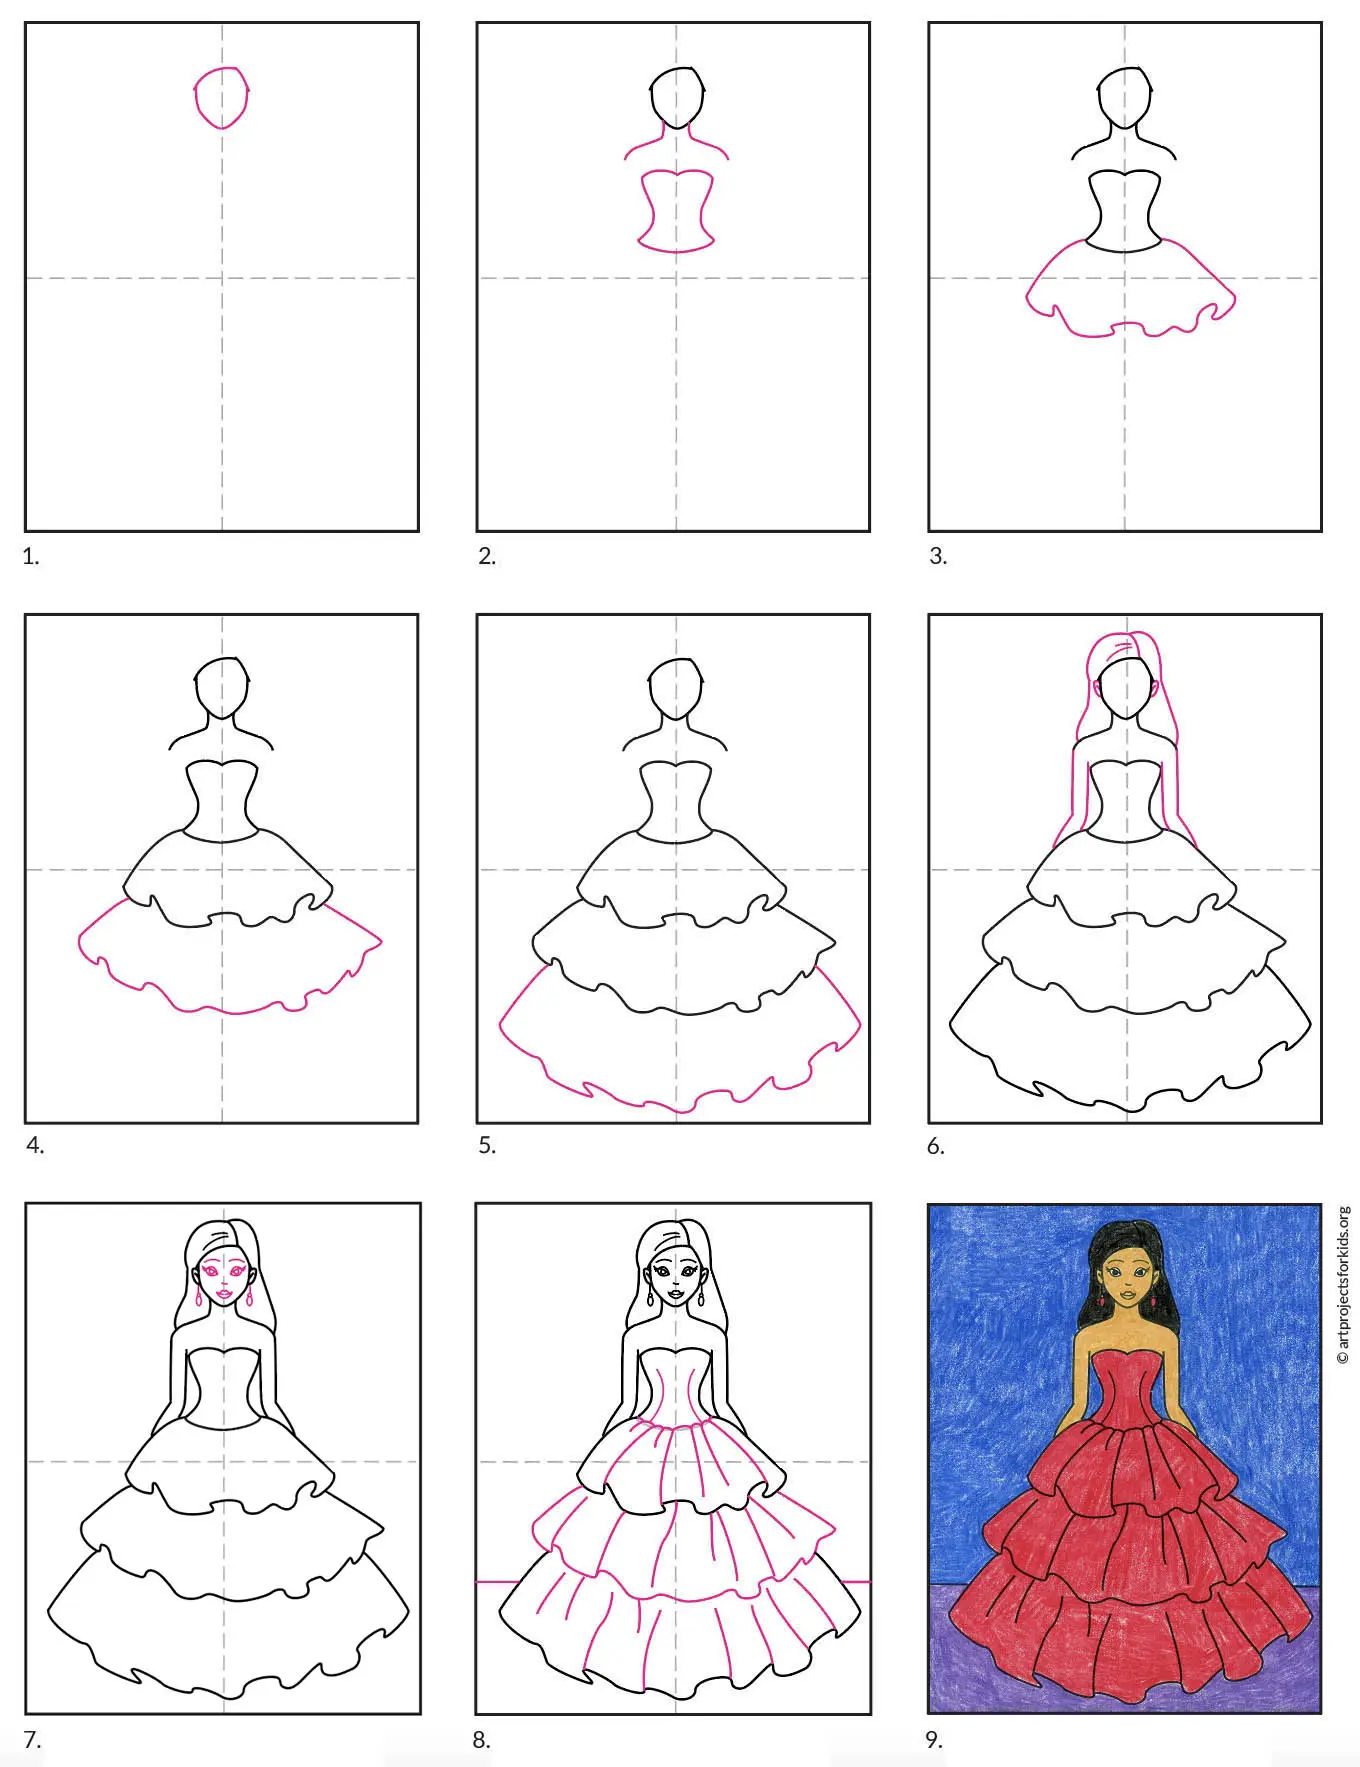 Bạn muốn biết cách vẽ váy đơn giản? Những bức hình này sẽ khiến cho bạn trở nên thú vị khi vẽ cho dù bạn là người mới bắt đầu hay là chuyên nghiệp. Hãy theo dõi hướng dẫn từng bước để tạo ra những chiếc váy đơn giản, dễ thương nhưng không kém phần chuyên nghiệp.